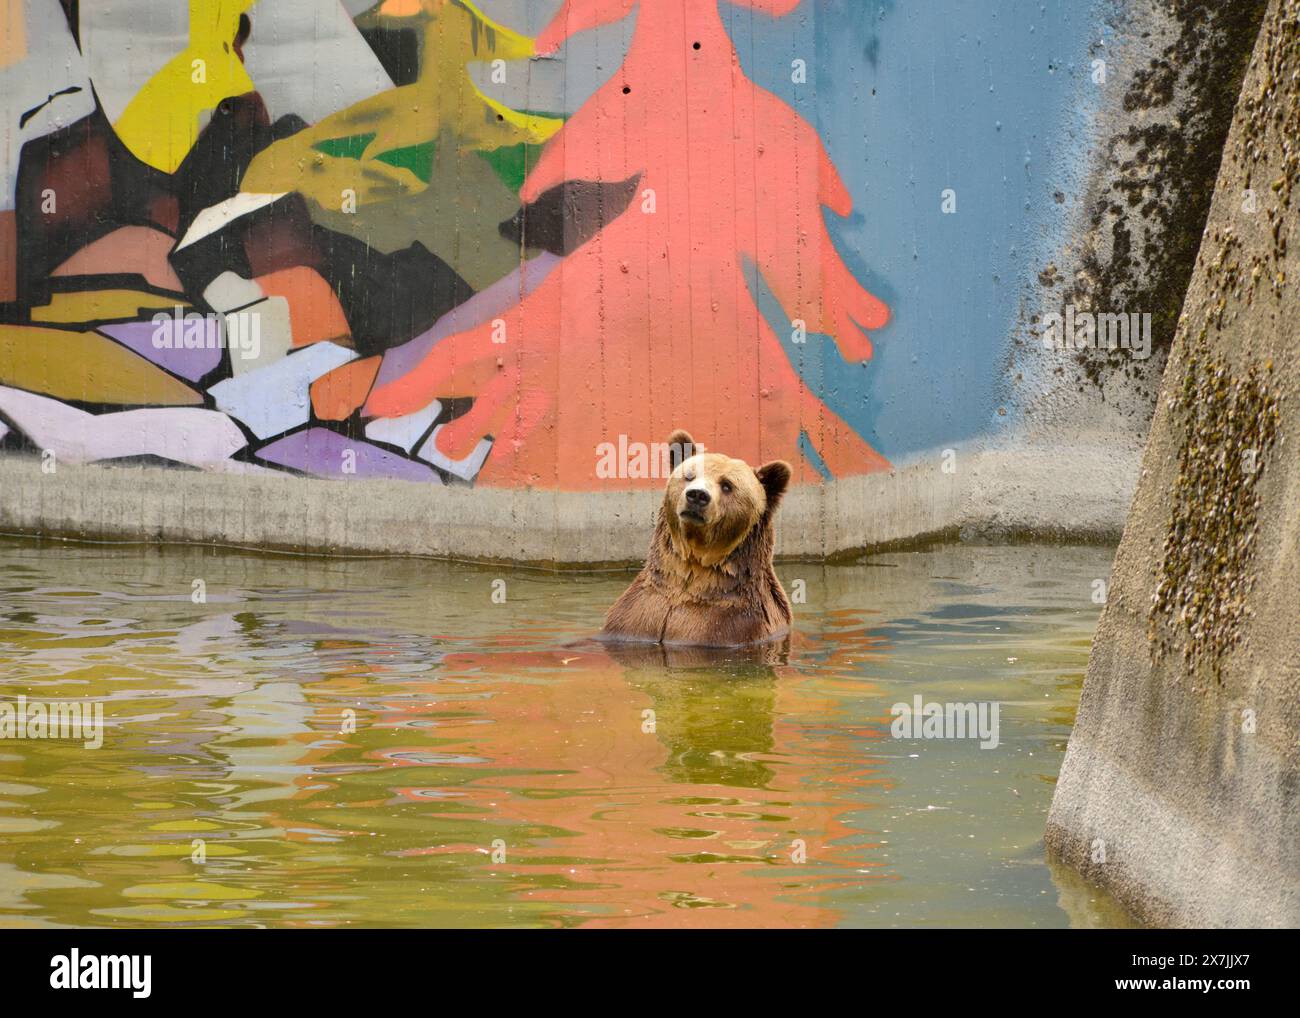 Der eurasische Braunbär Ursus arctos arctos im Wasser mit einem Bad in Gefangenschaft in seinem Betongehege mit Gemälden im Sofia Zoo, Sofia Bulgarien Stockfoto